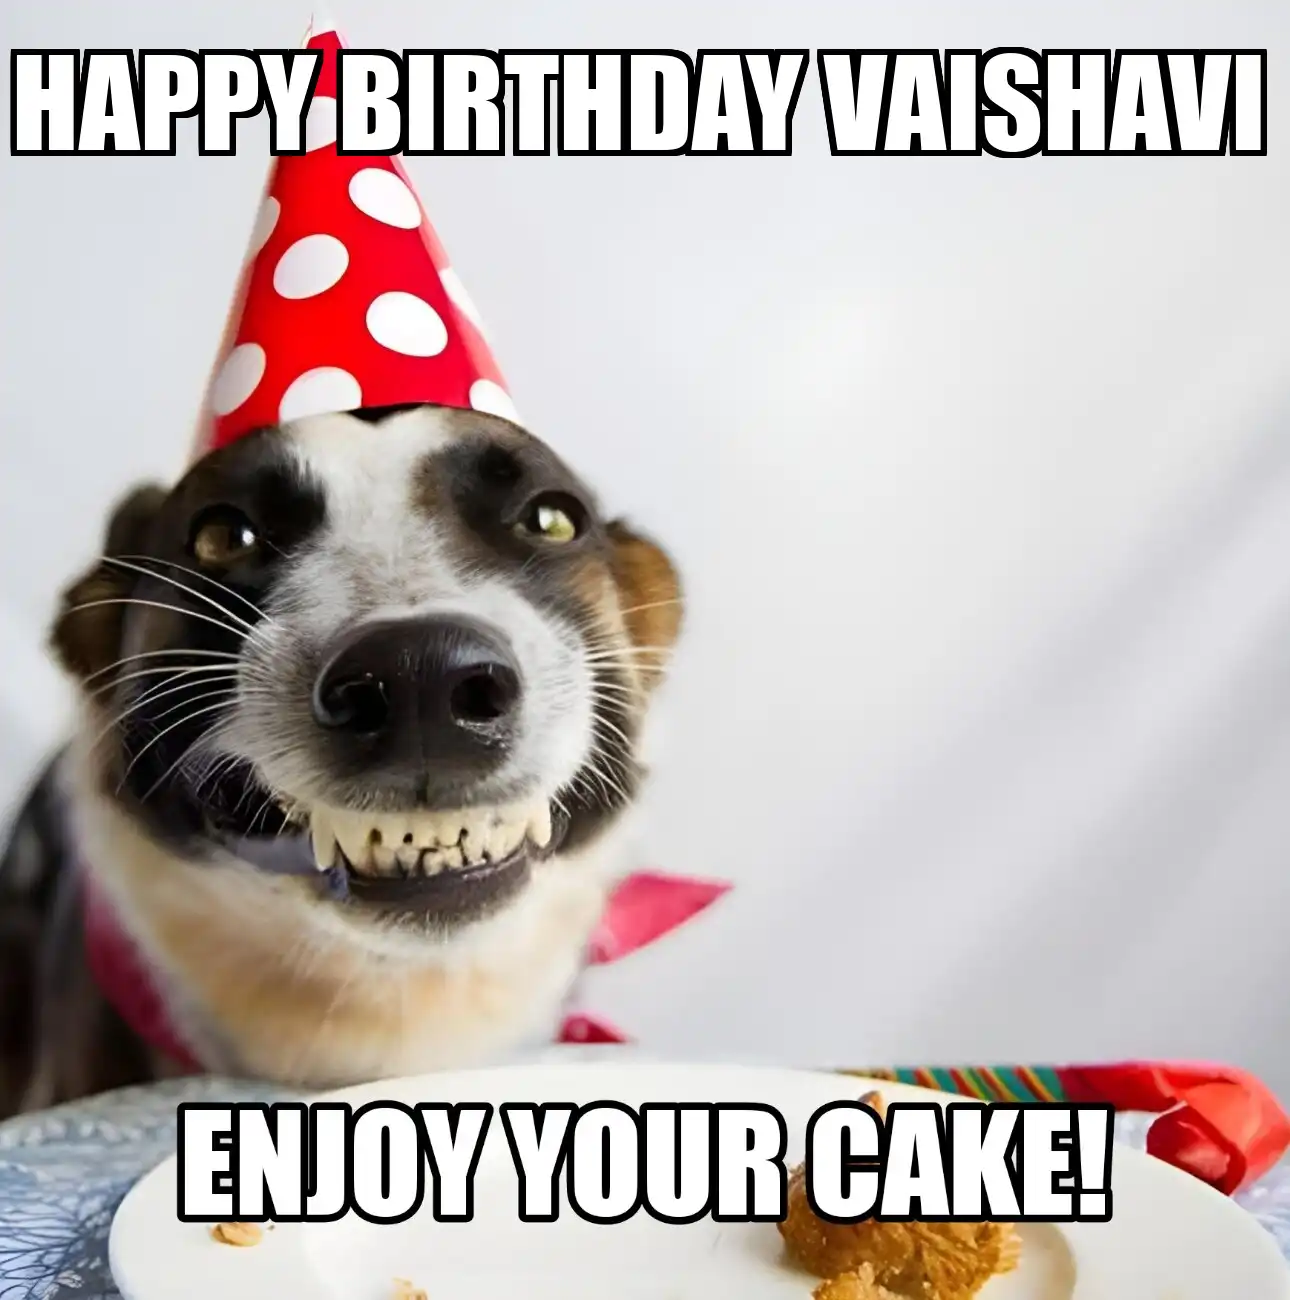 Happy Birthday Vaishavi Enjoy Your Cake Dog Meme